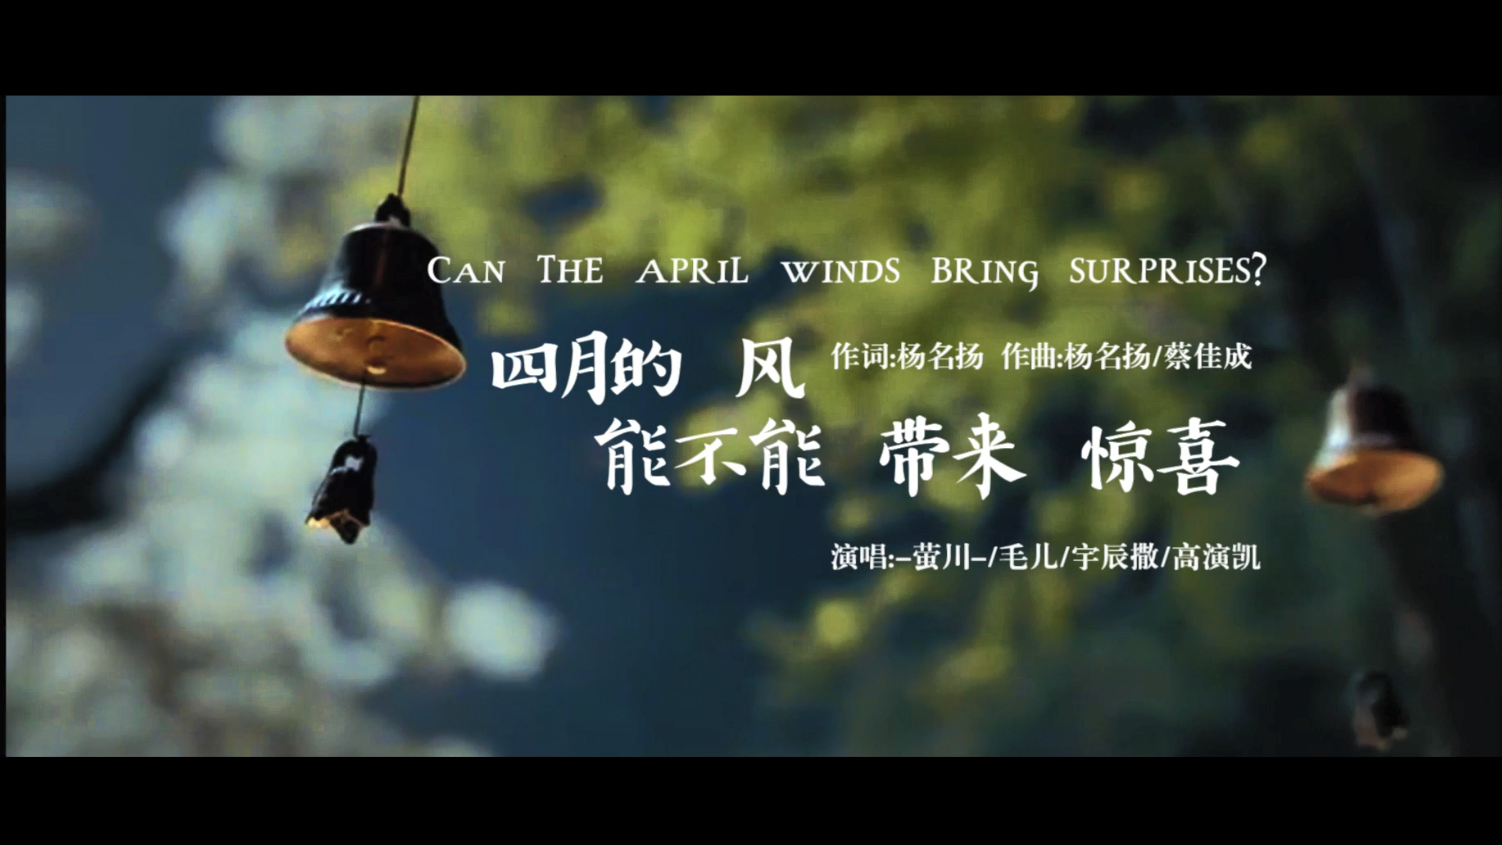 杨名扬 - MV：四月的风，能不能带来惊喜